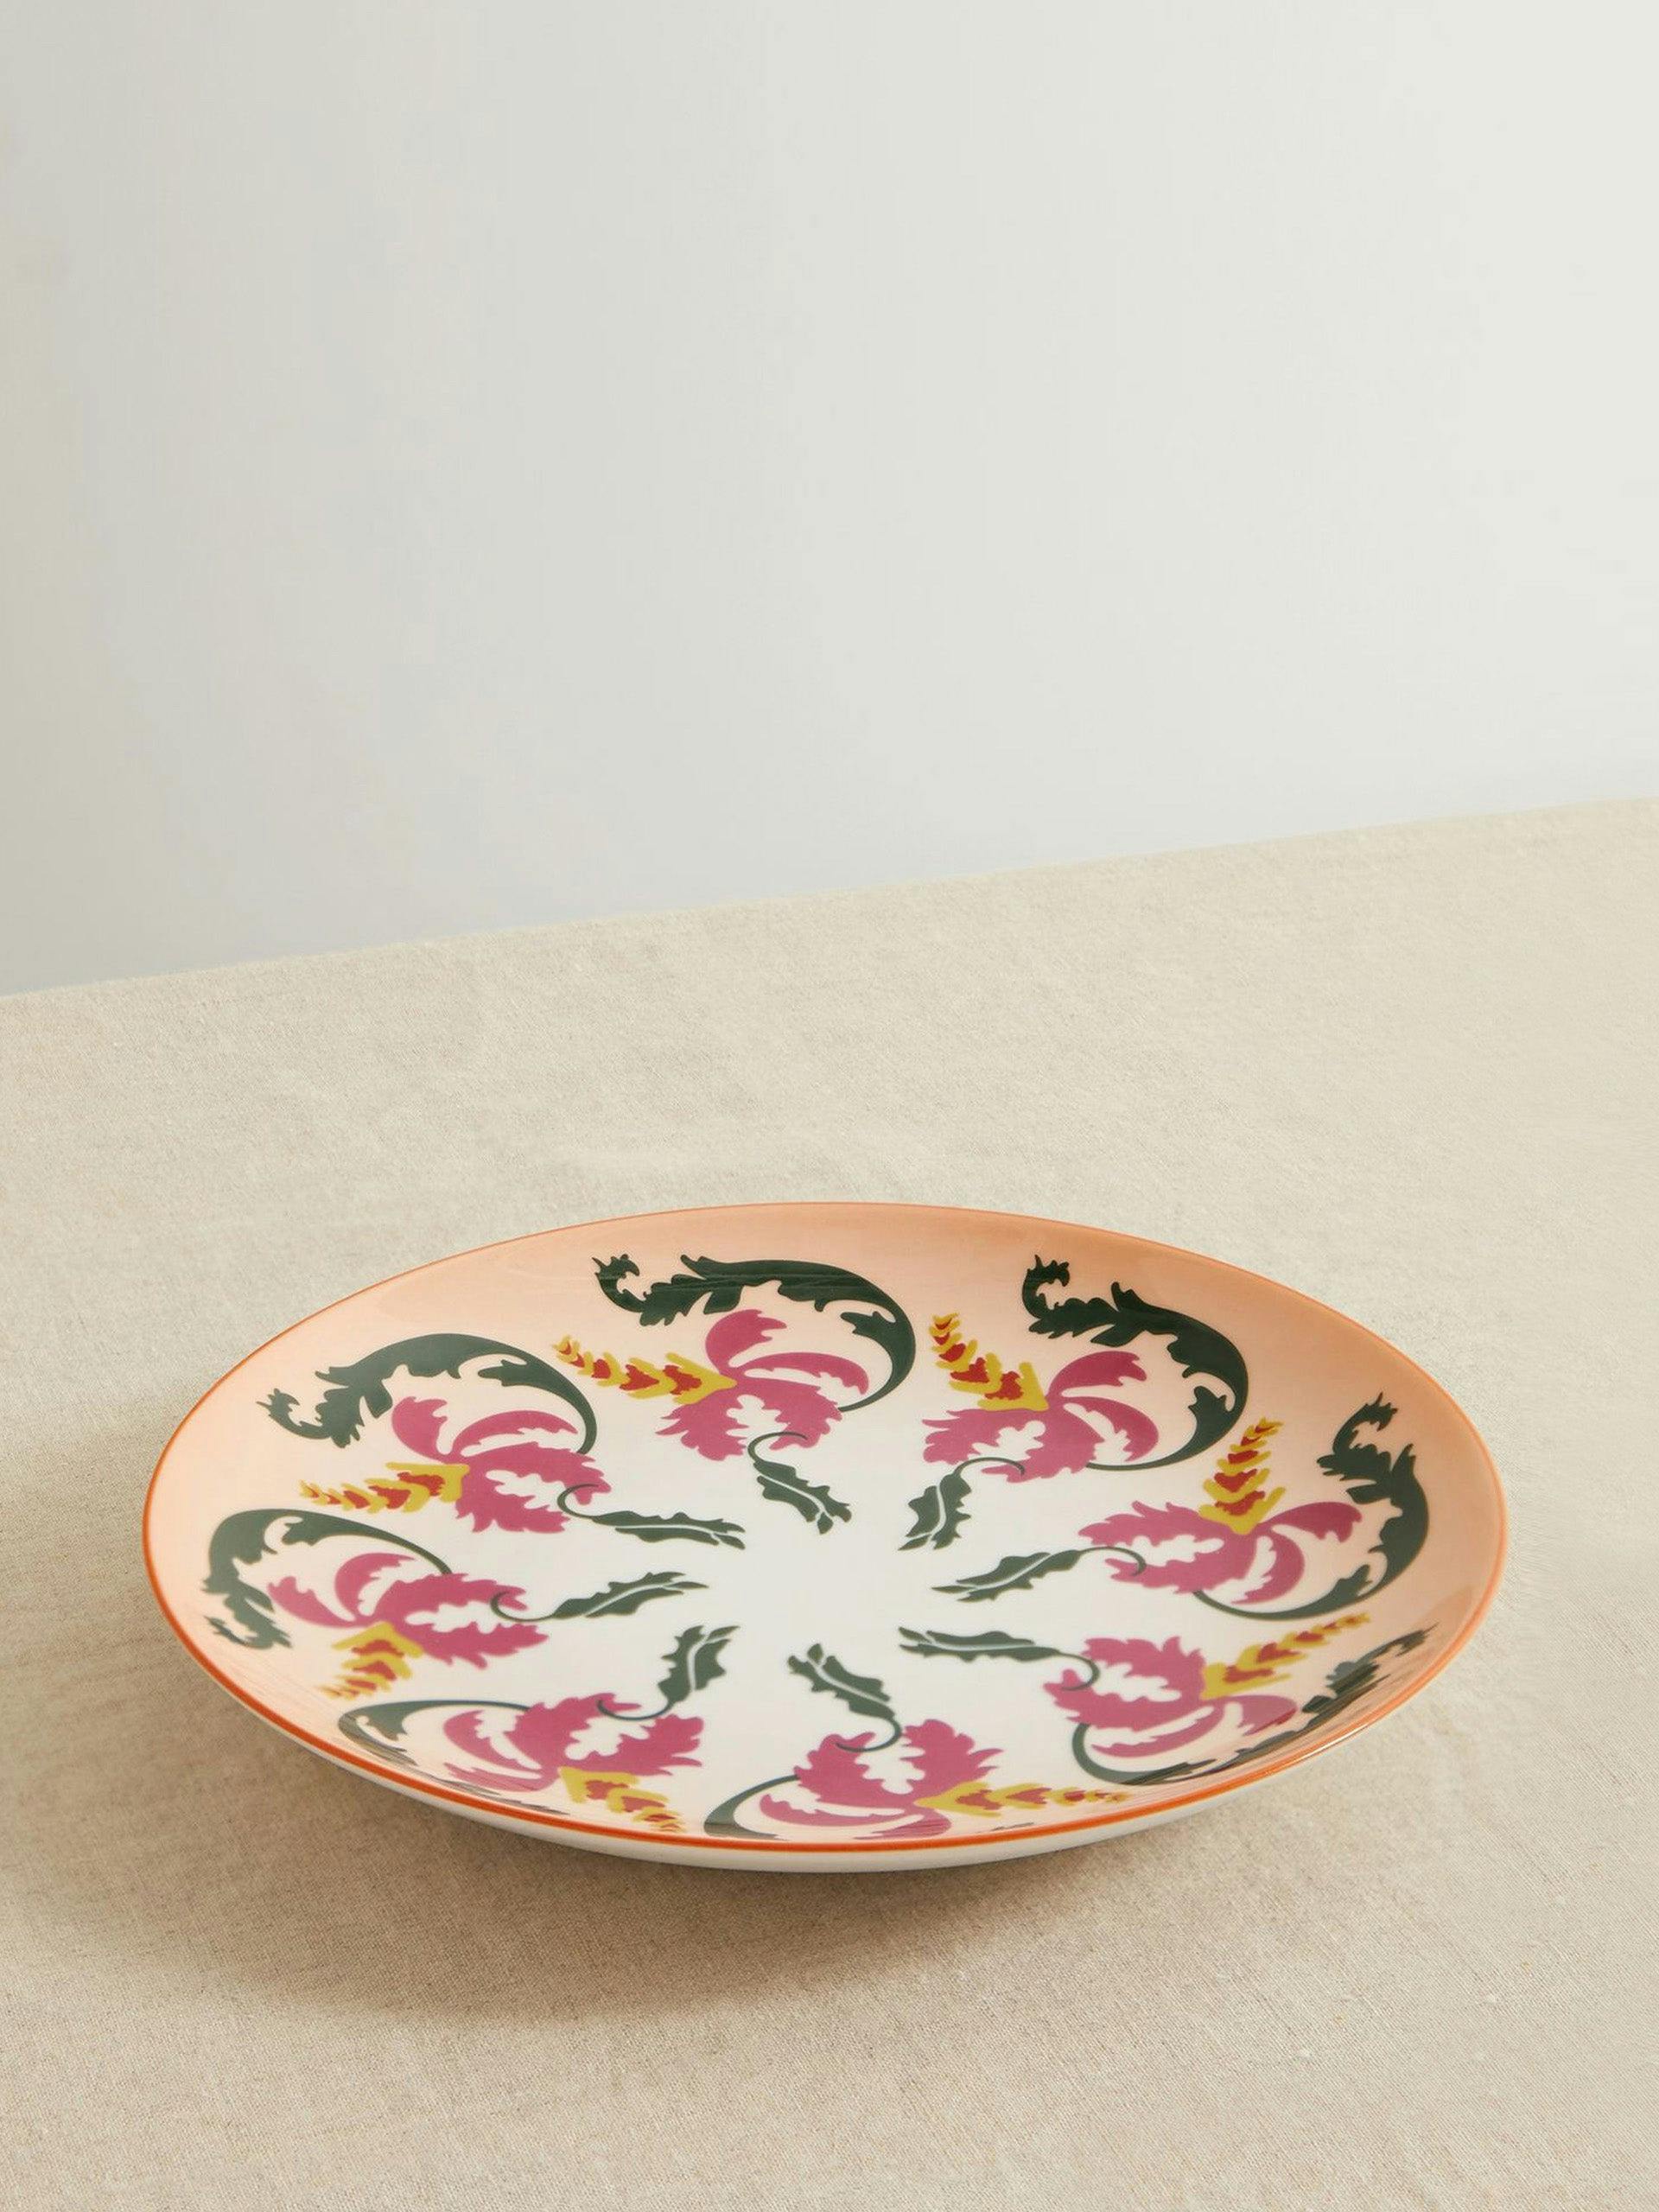 + GINORI 1735 Olga porcelain dessert plate